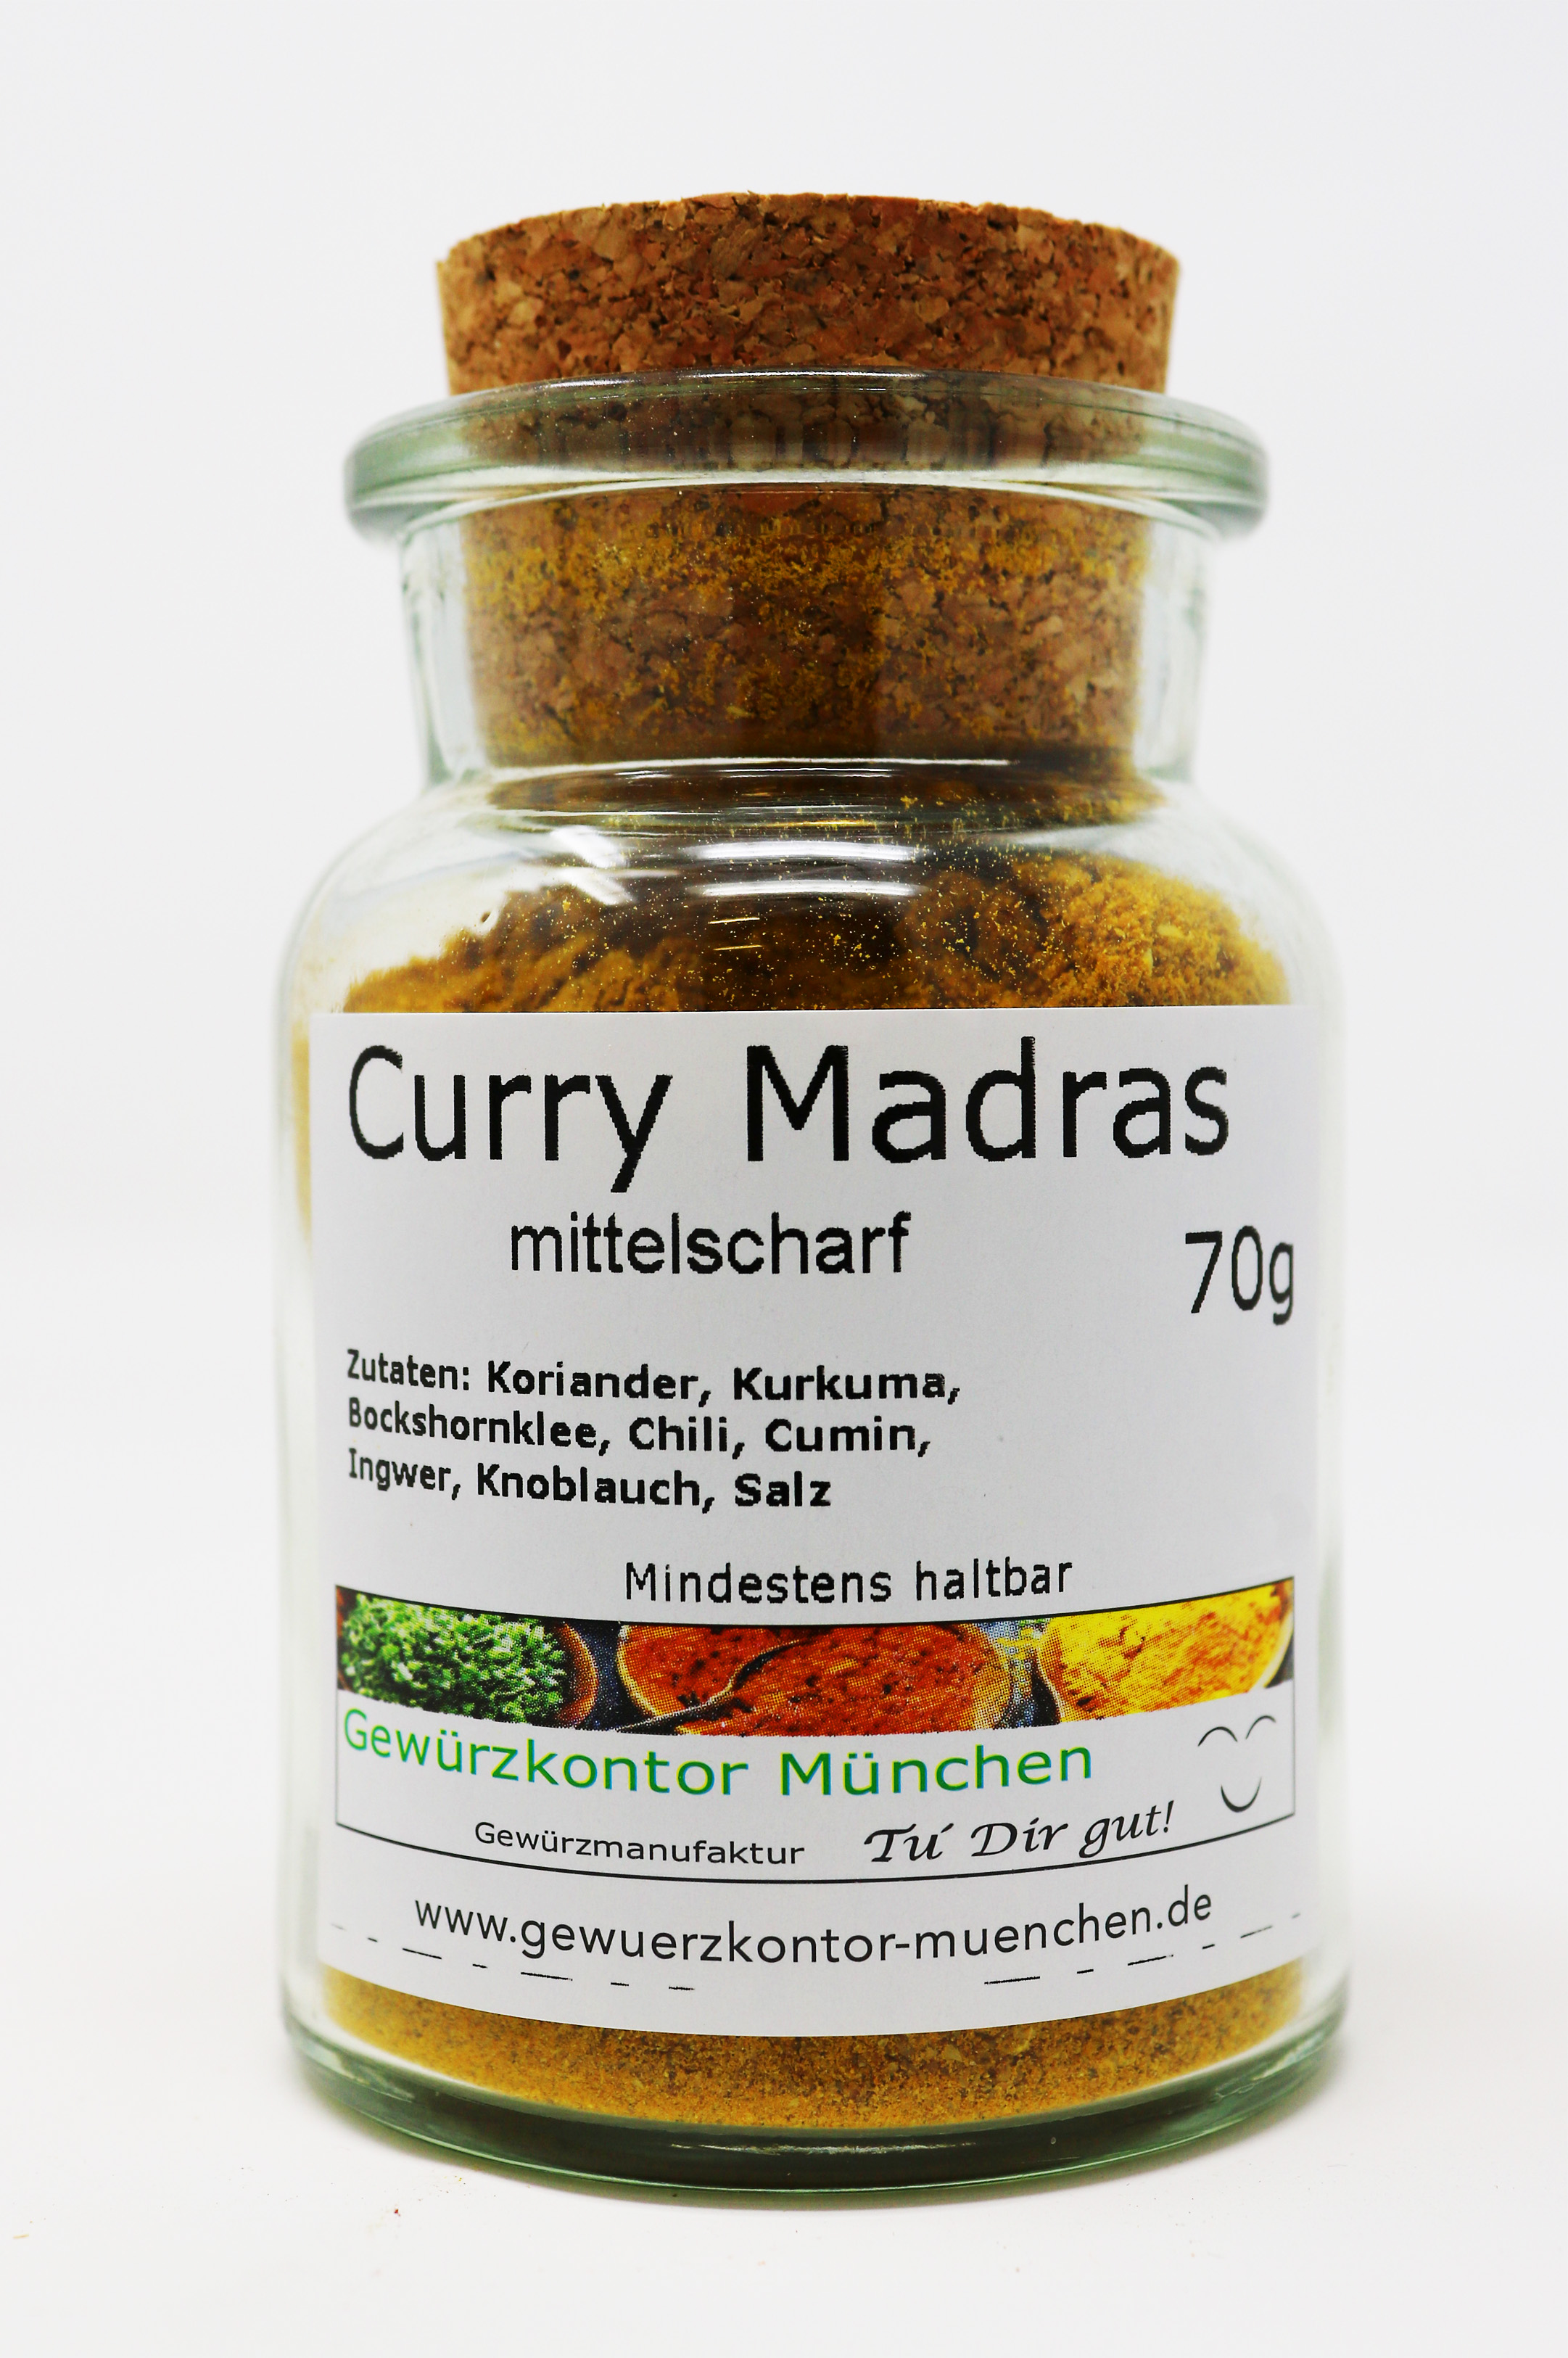 Curry Madras mittelscharf 70g im Glas